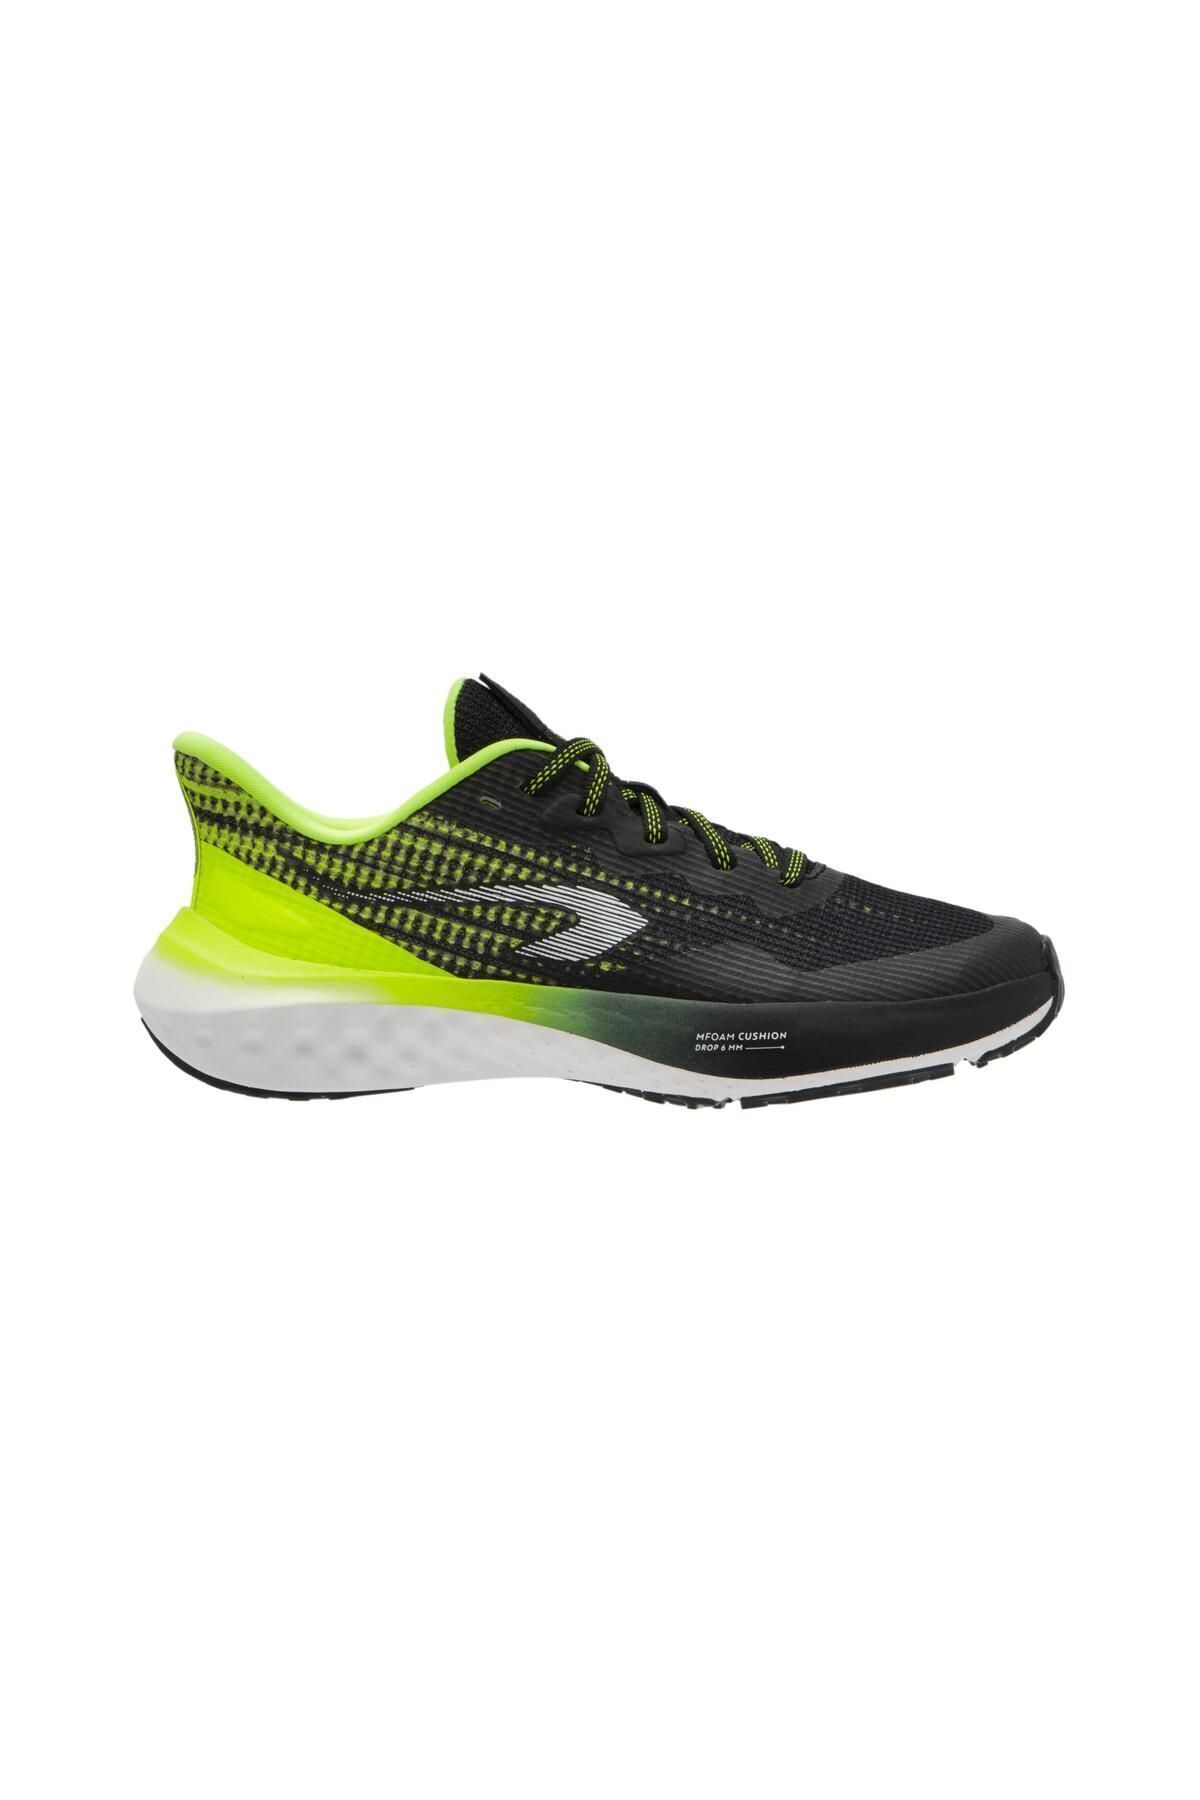 Decathlon Çocuk Koşu Ayakkabısı - Siyah / Sarı - Kiprun K500 Fast 338409